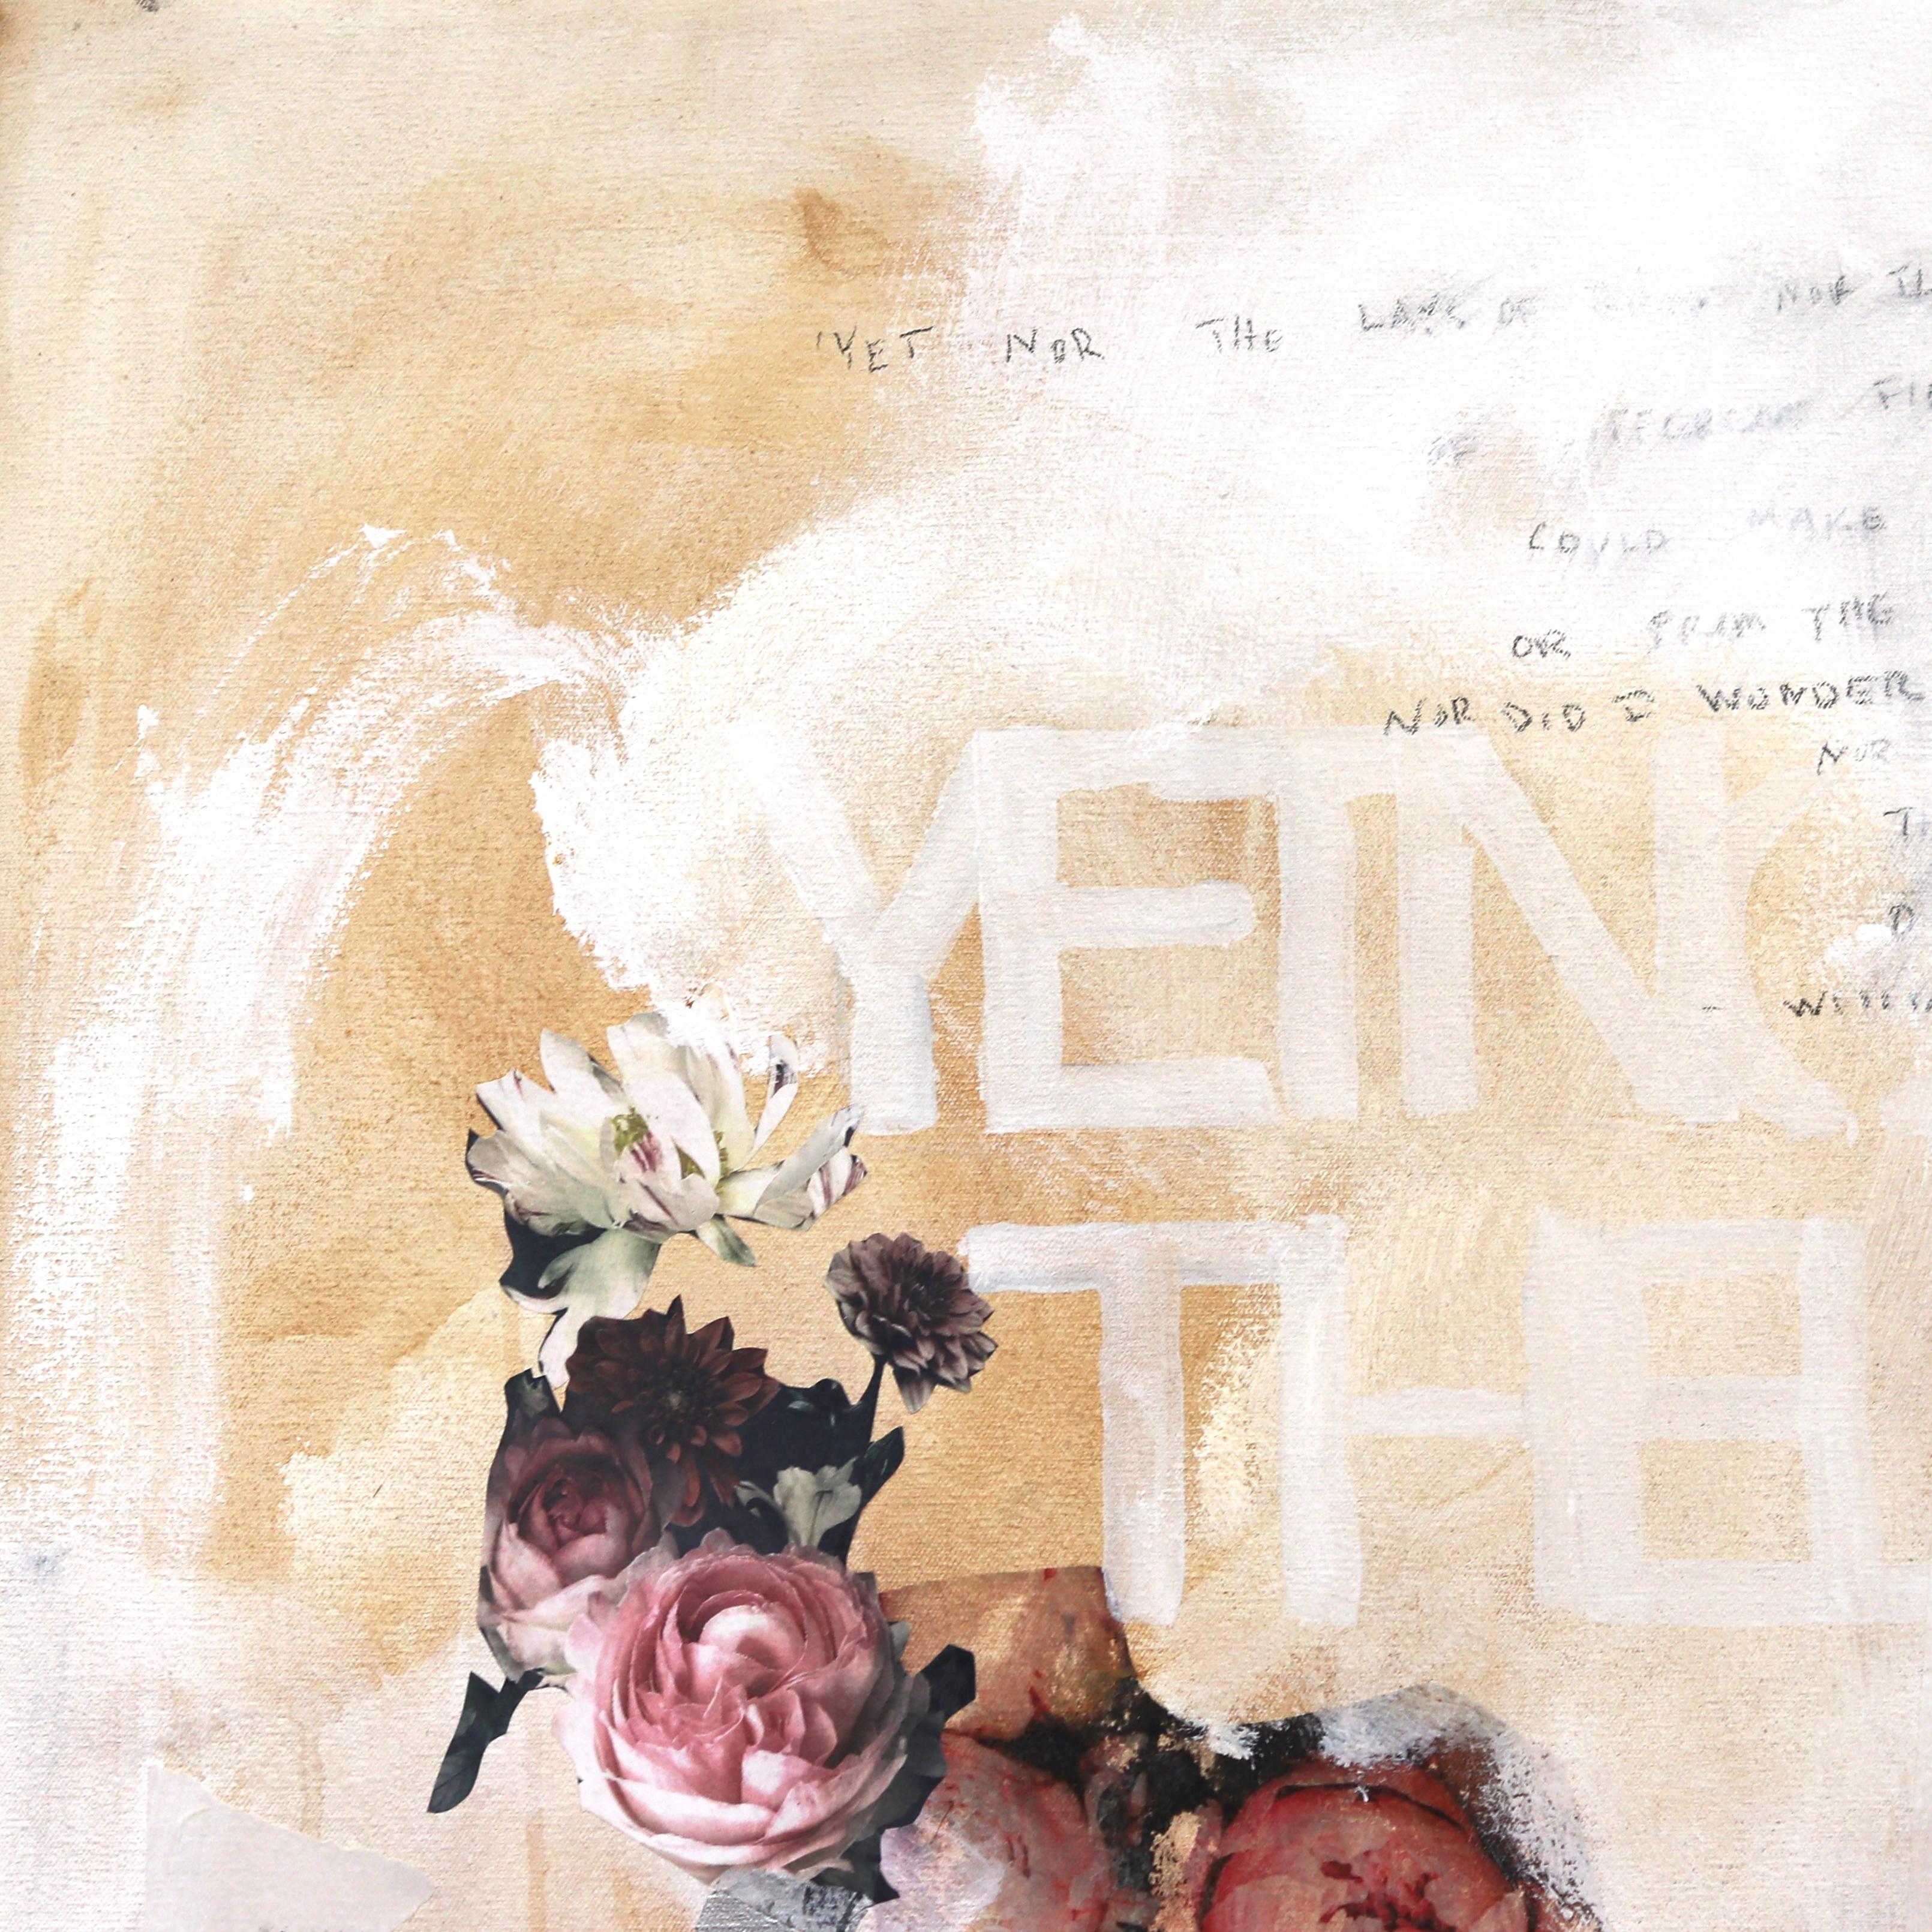 SS106 Bloom - Großes Gemälde in Mischtechnik, weiches, neutrales, abstraktes Expressionismus-Gemälde (Abstrakter Expressionismus), Painting, von Susan Washington